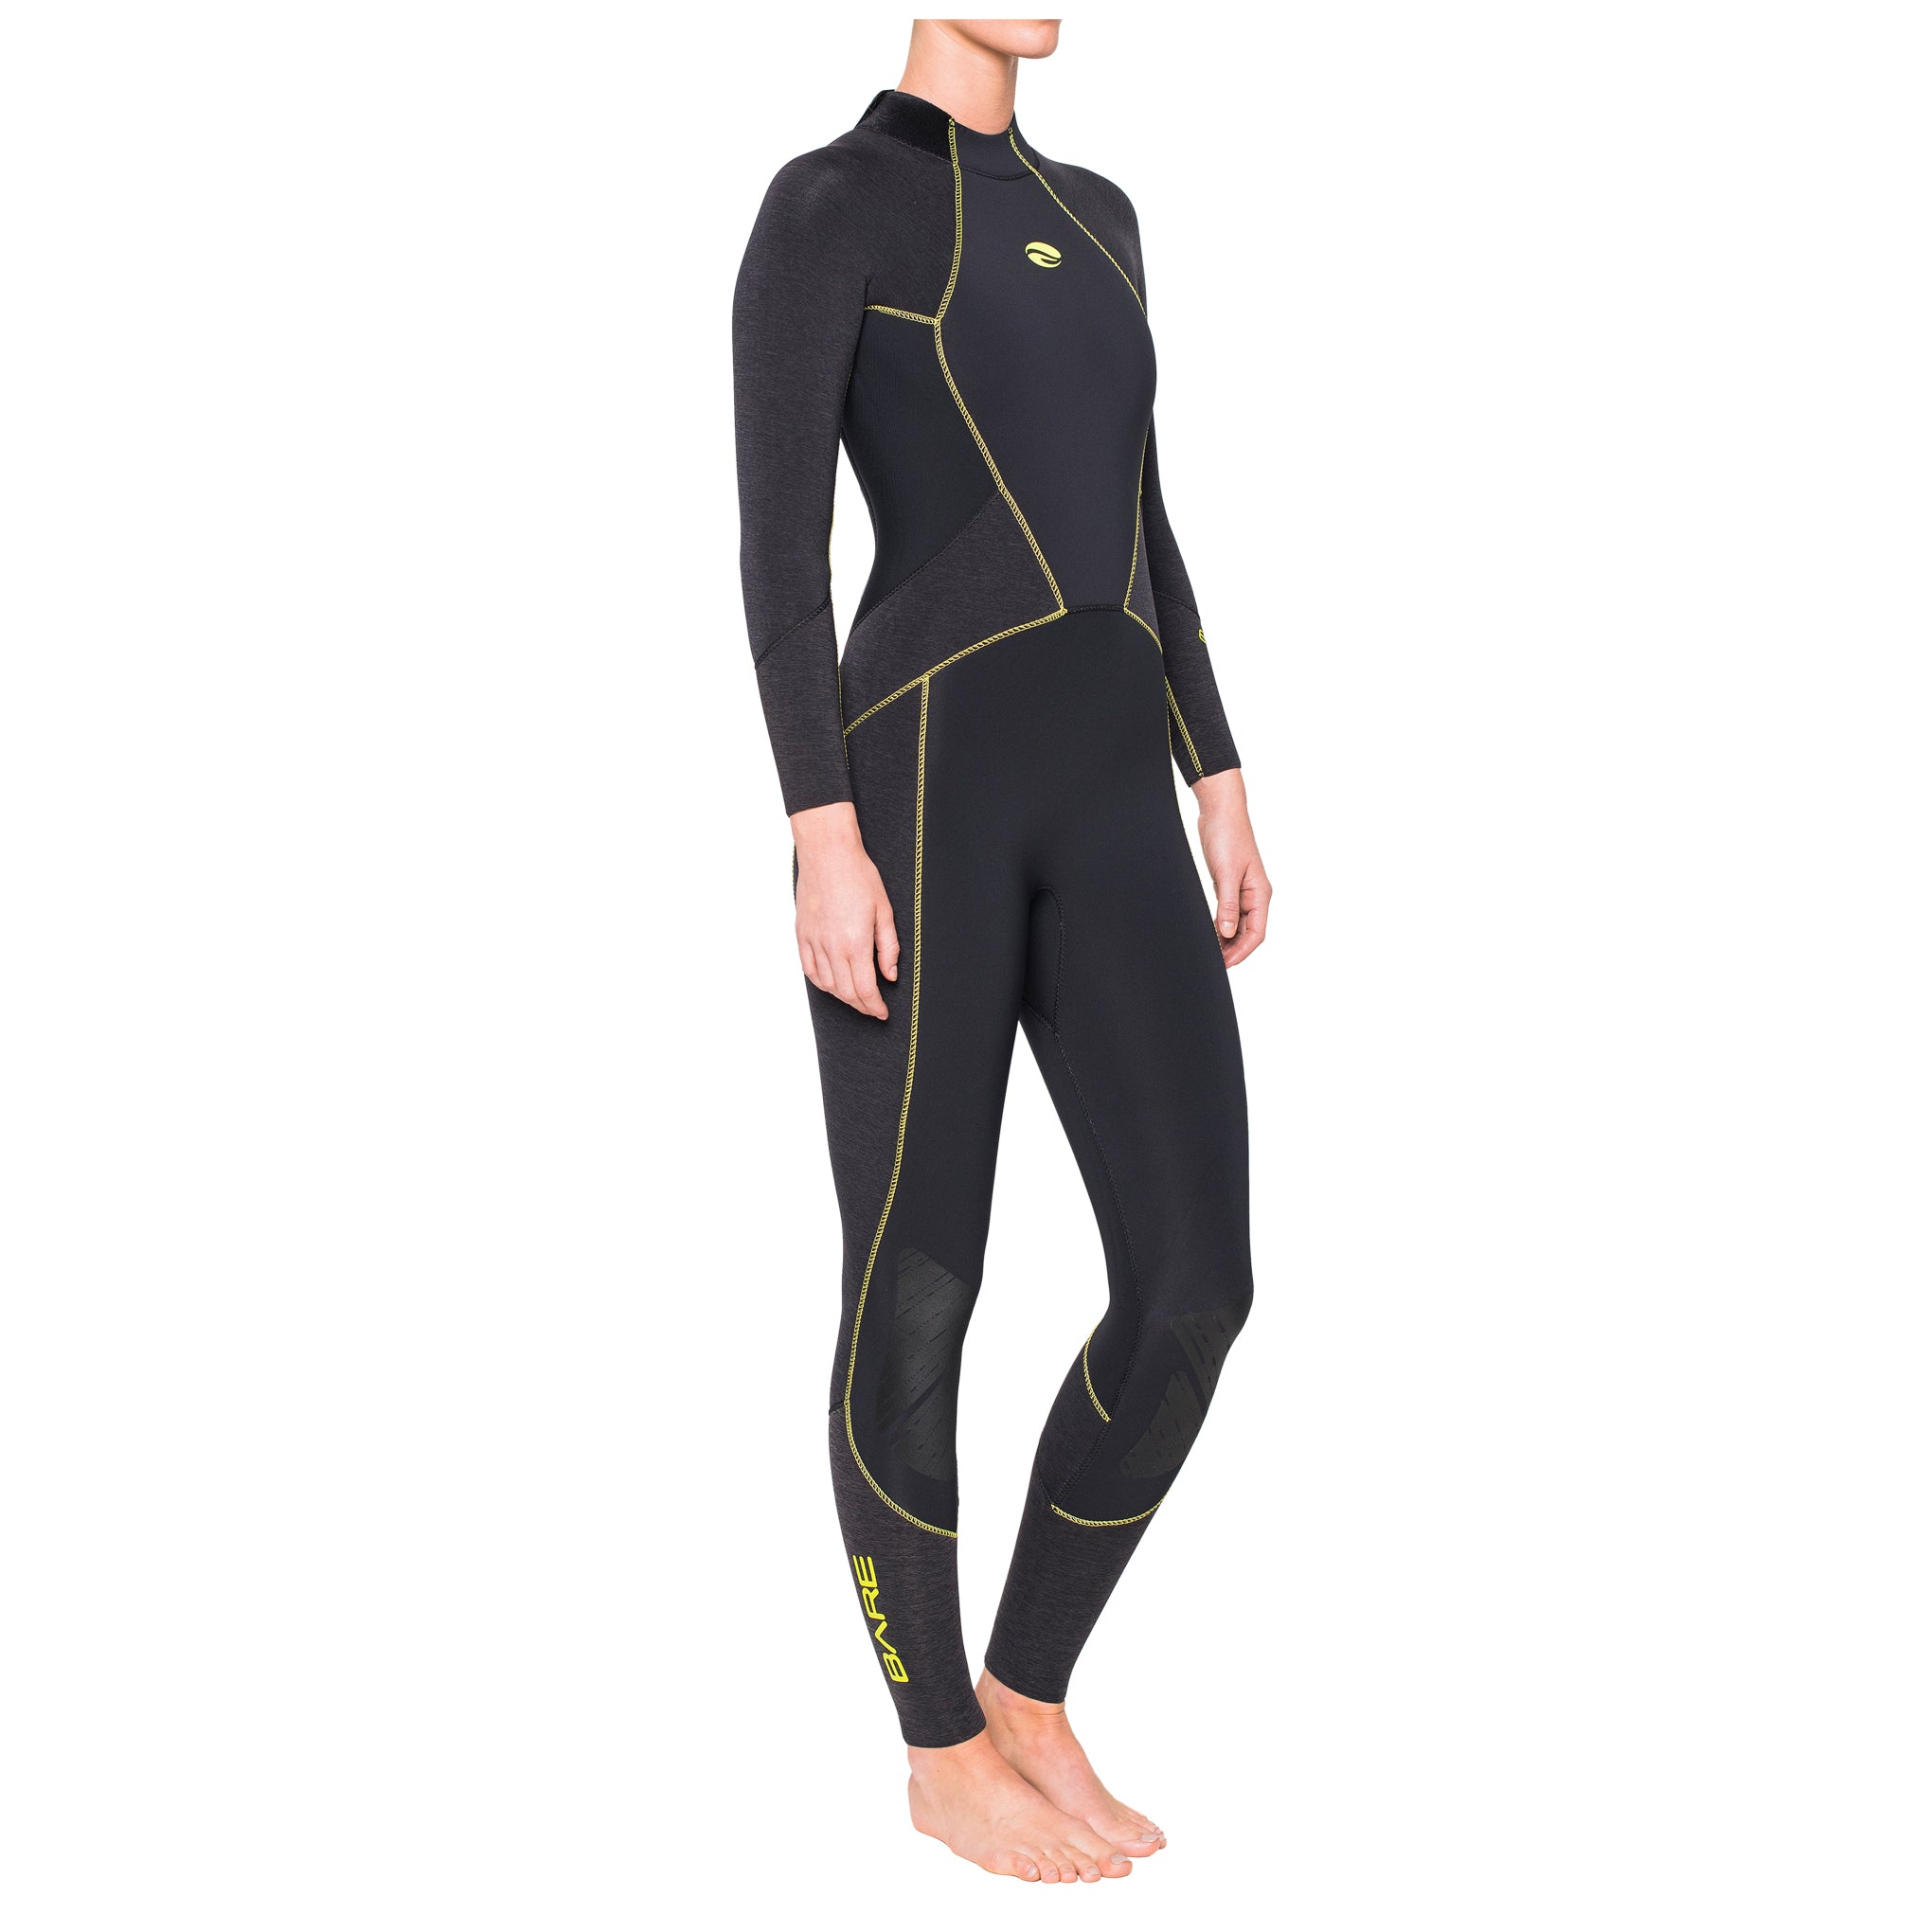 3mm Evoke Full - Women's-Wetsuits-Snorkeling, diver, sharkskin, scuba diving hk, warm protection, sharkskin, dive wear, bare wetsuit, aeroskin wetsuit, 浮潛